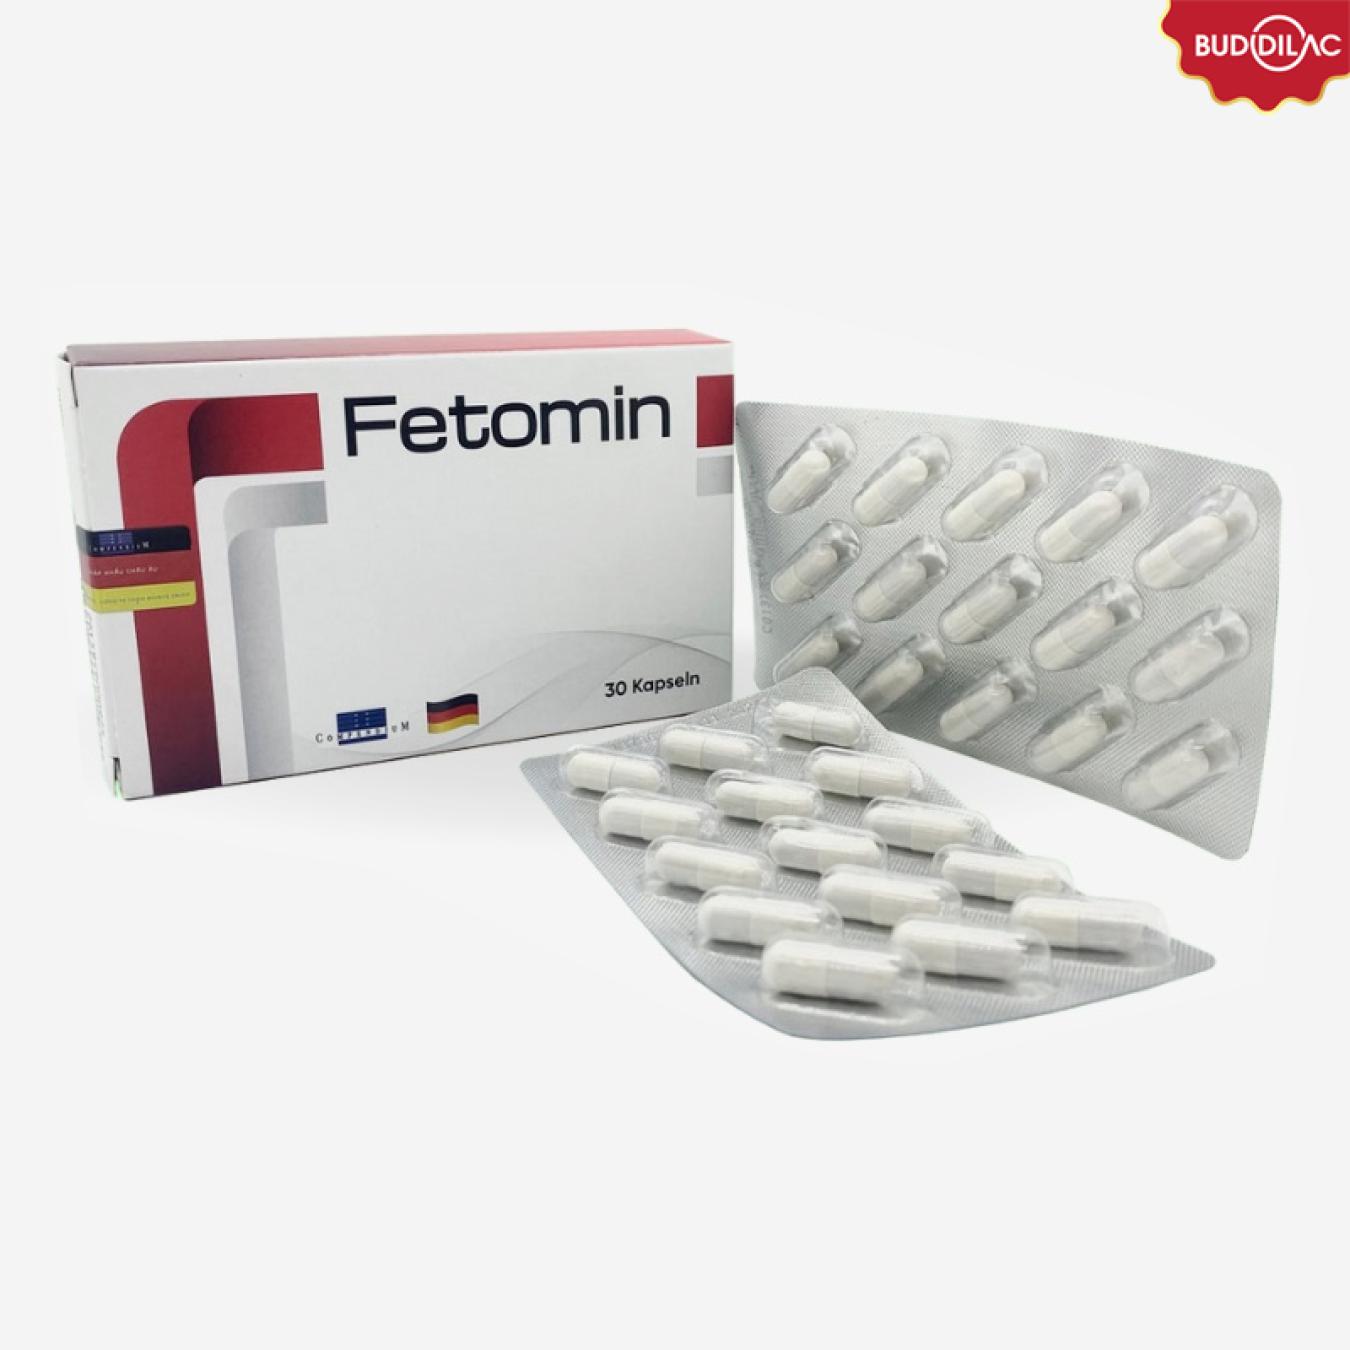 Fetomin - Hỗ trợ bổ sung sắt, chất hữu cơ cho bà bầu